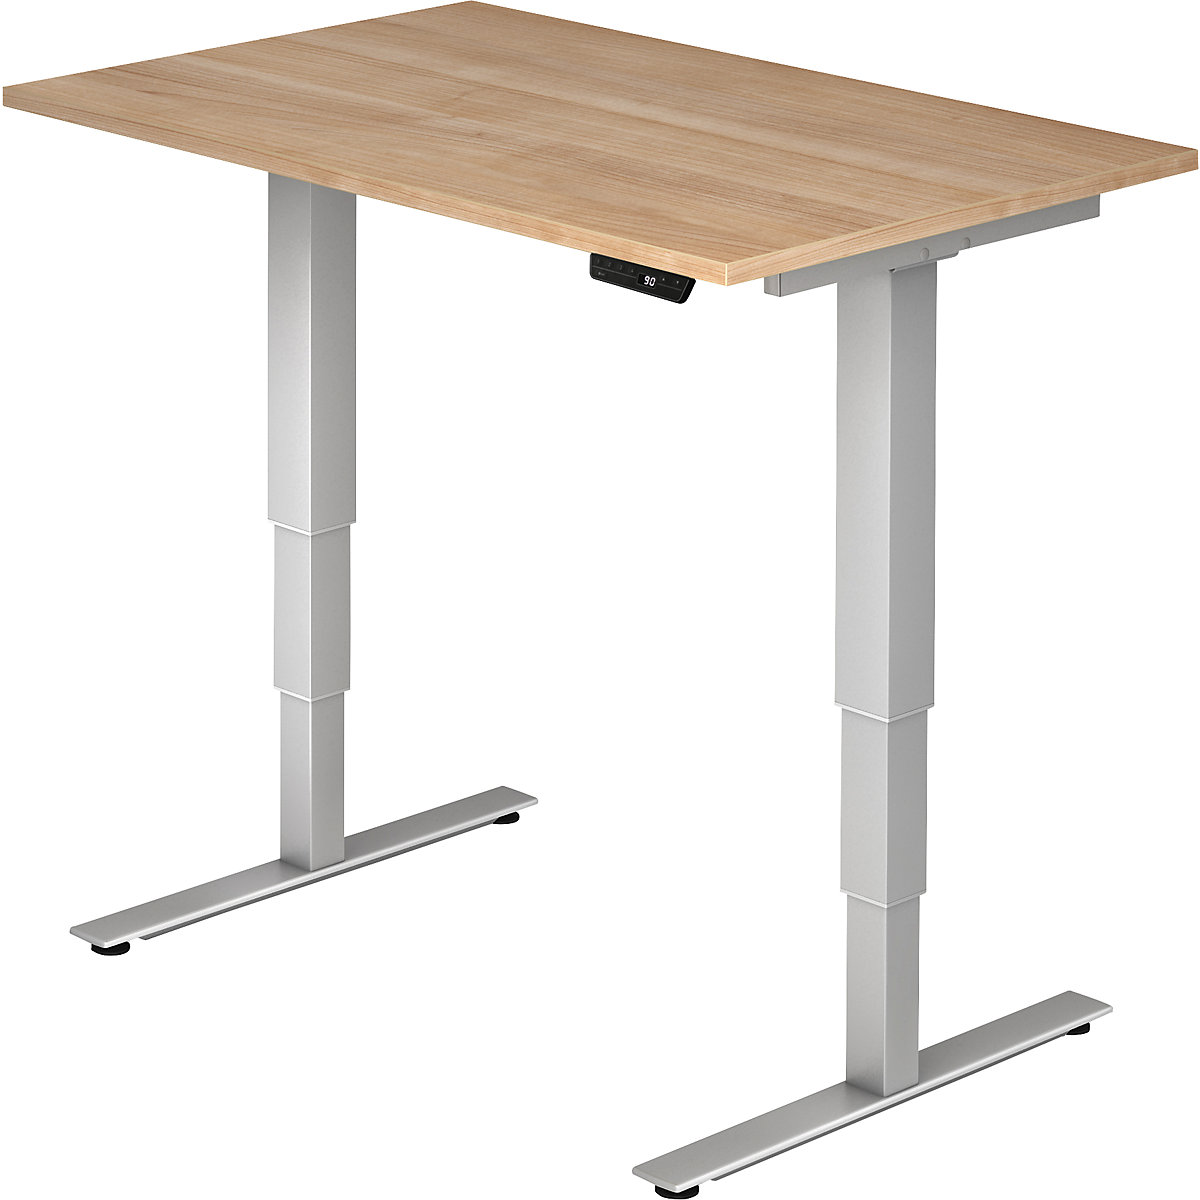 UPLINER-2.0 Psací stůl pro práci vestoje, s elektrickým přestavováním výšky, podstavec s nohami ve tvaru T, šířka 1200 mm, ořechový dekor